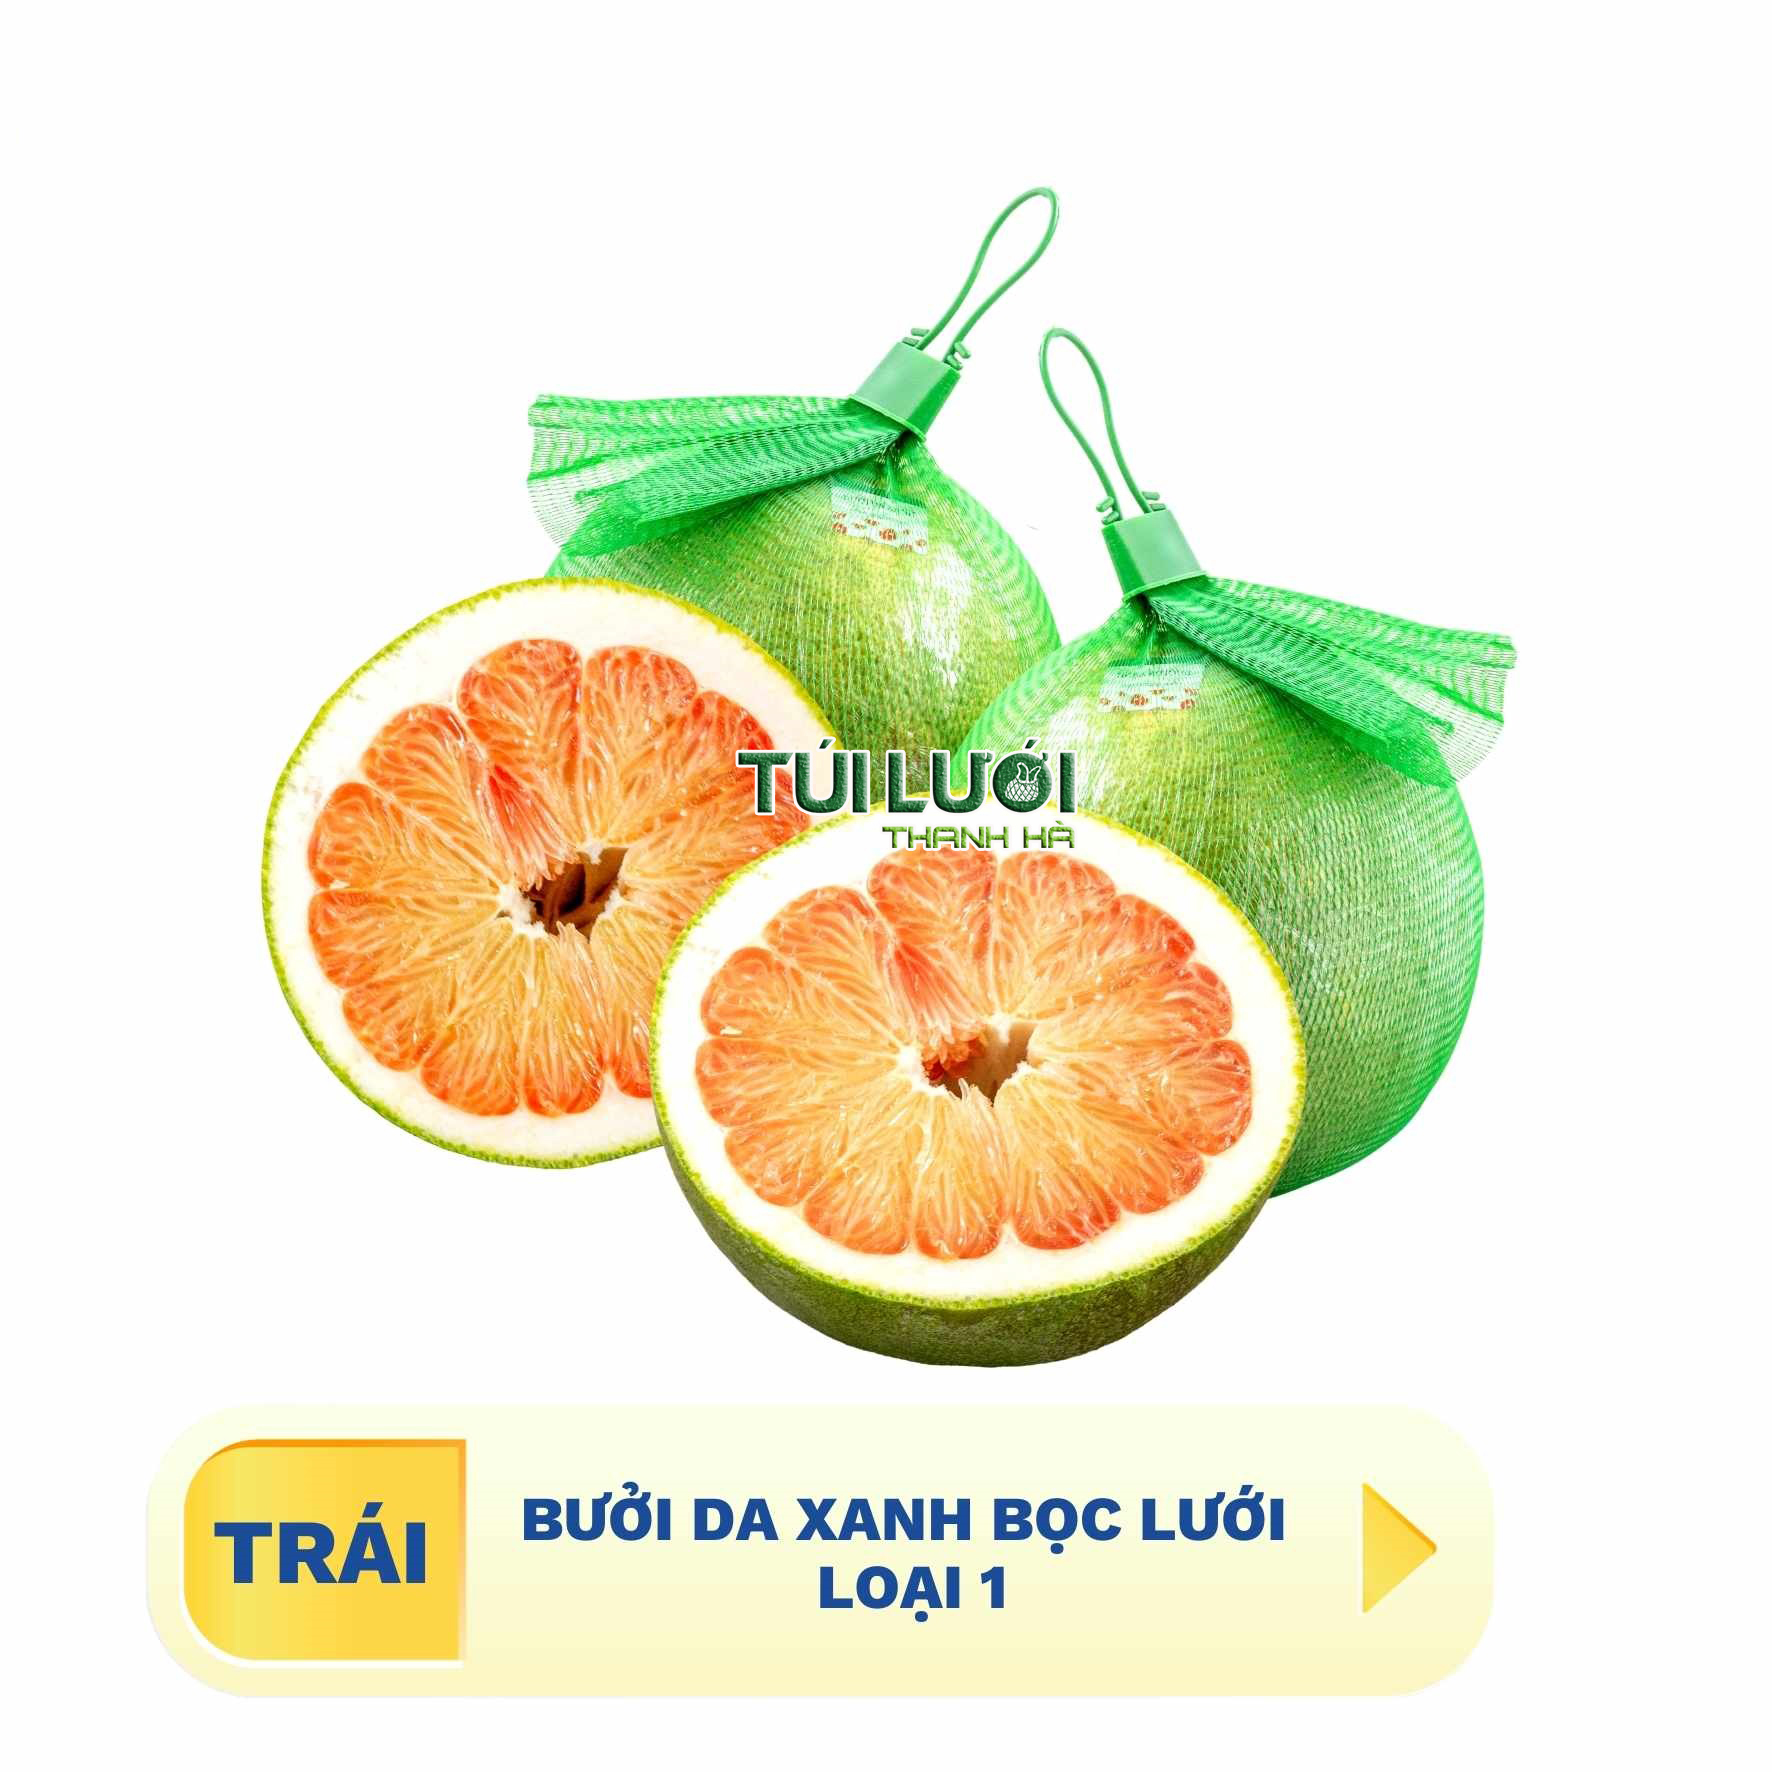 Bưởi da xanh đặc sản trái cây Việt Nam